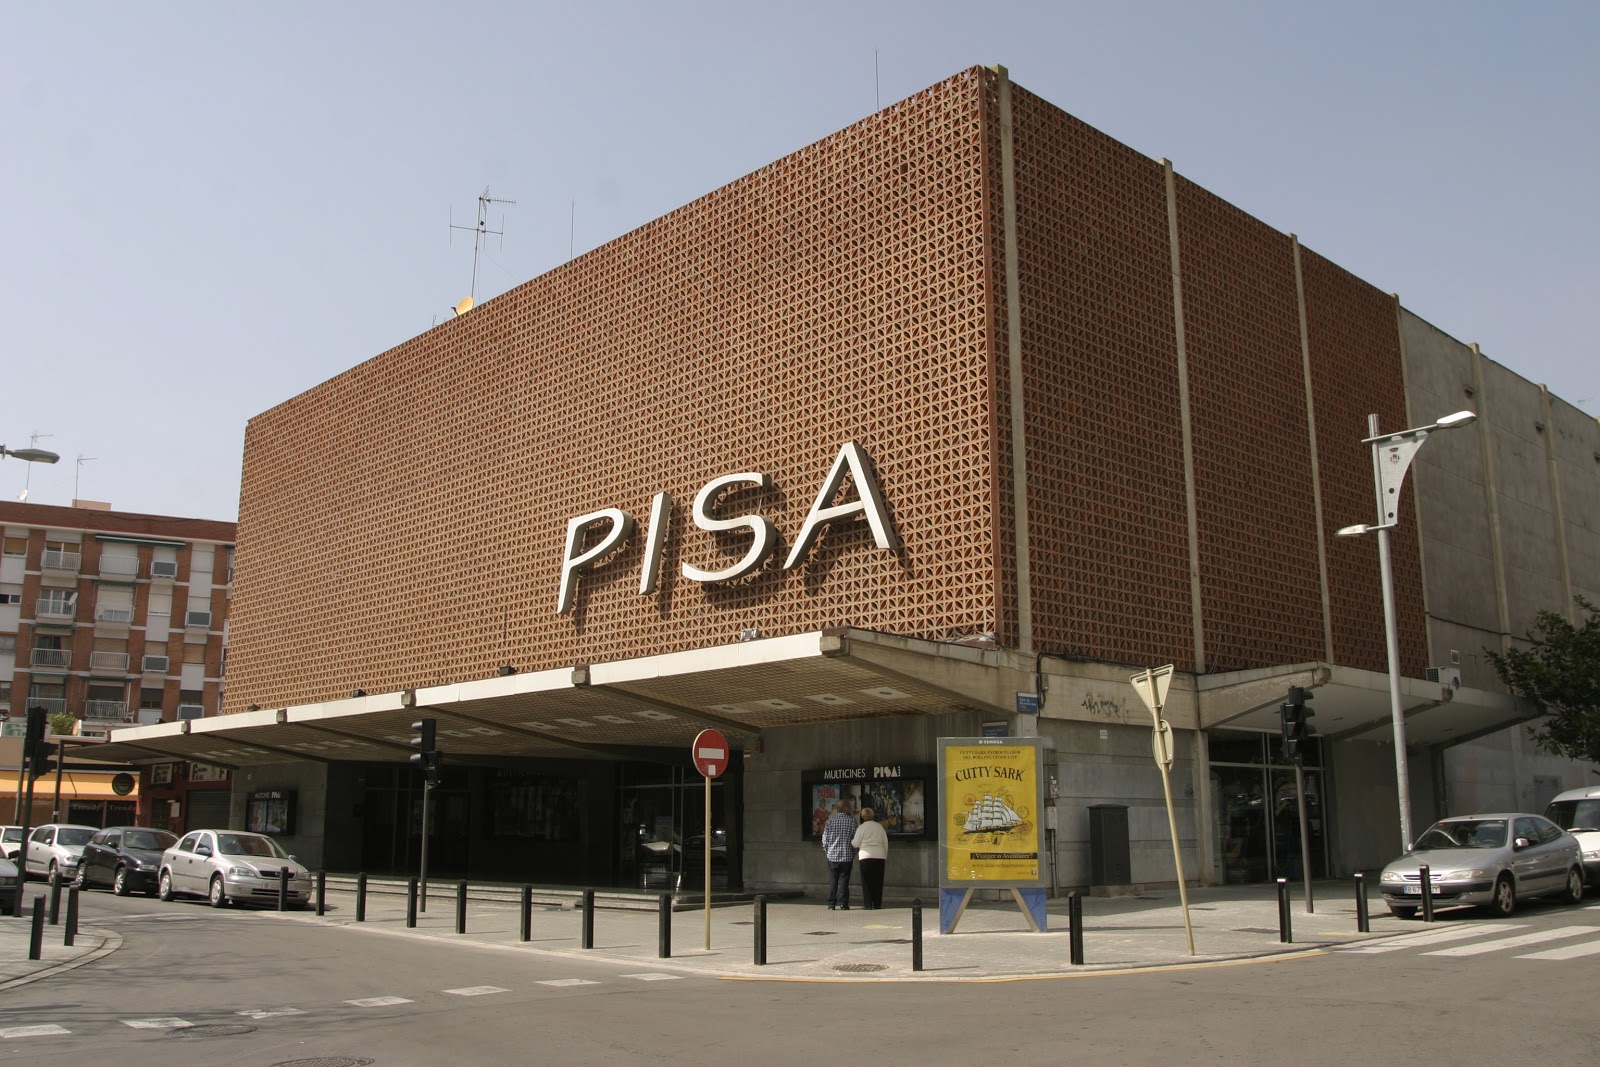 Cinema Pisa de Cornellà de Llobregat